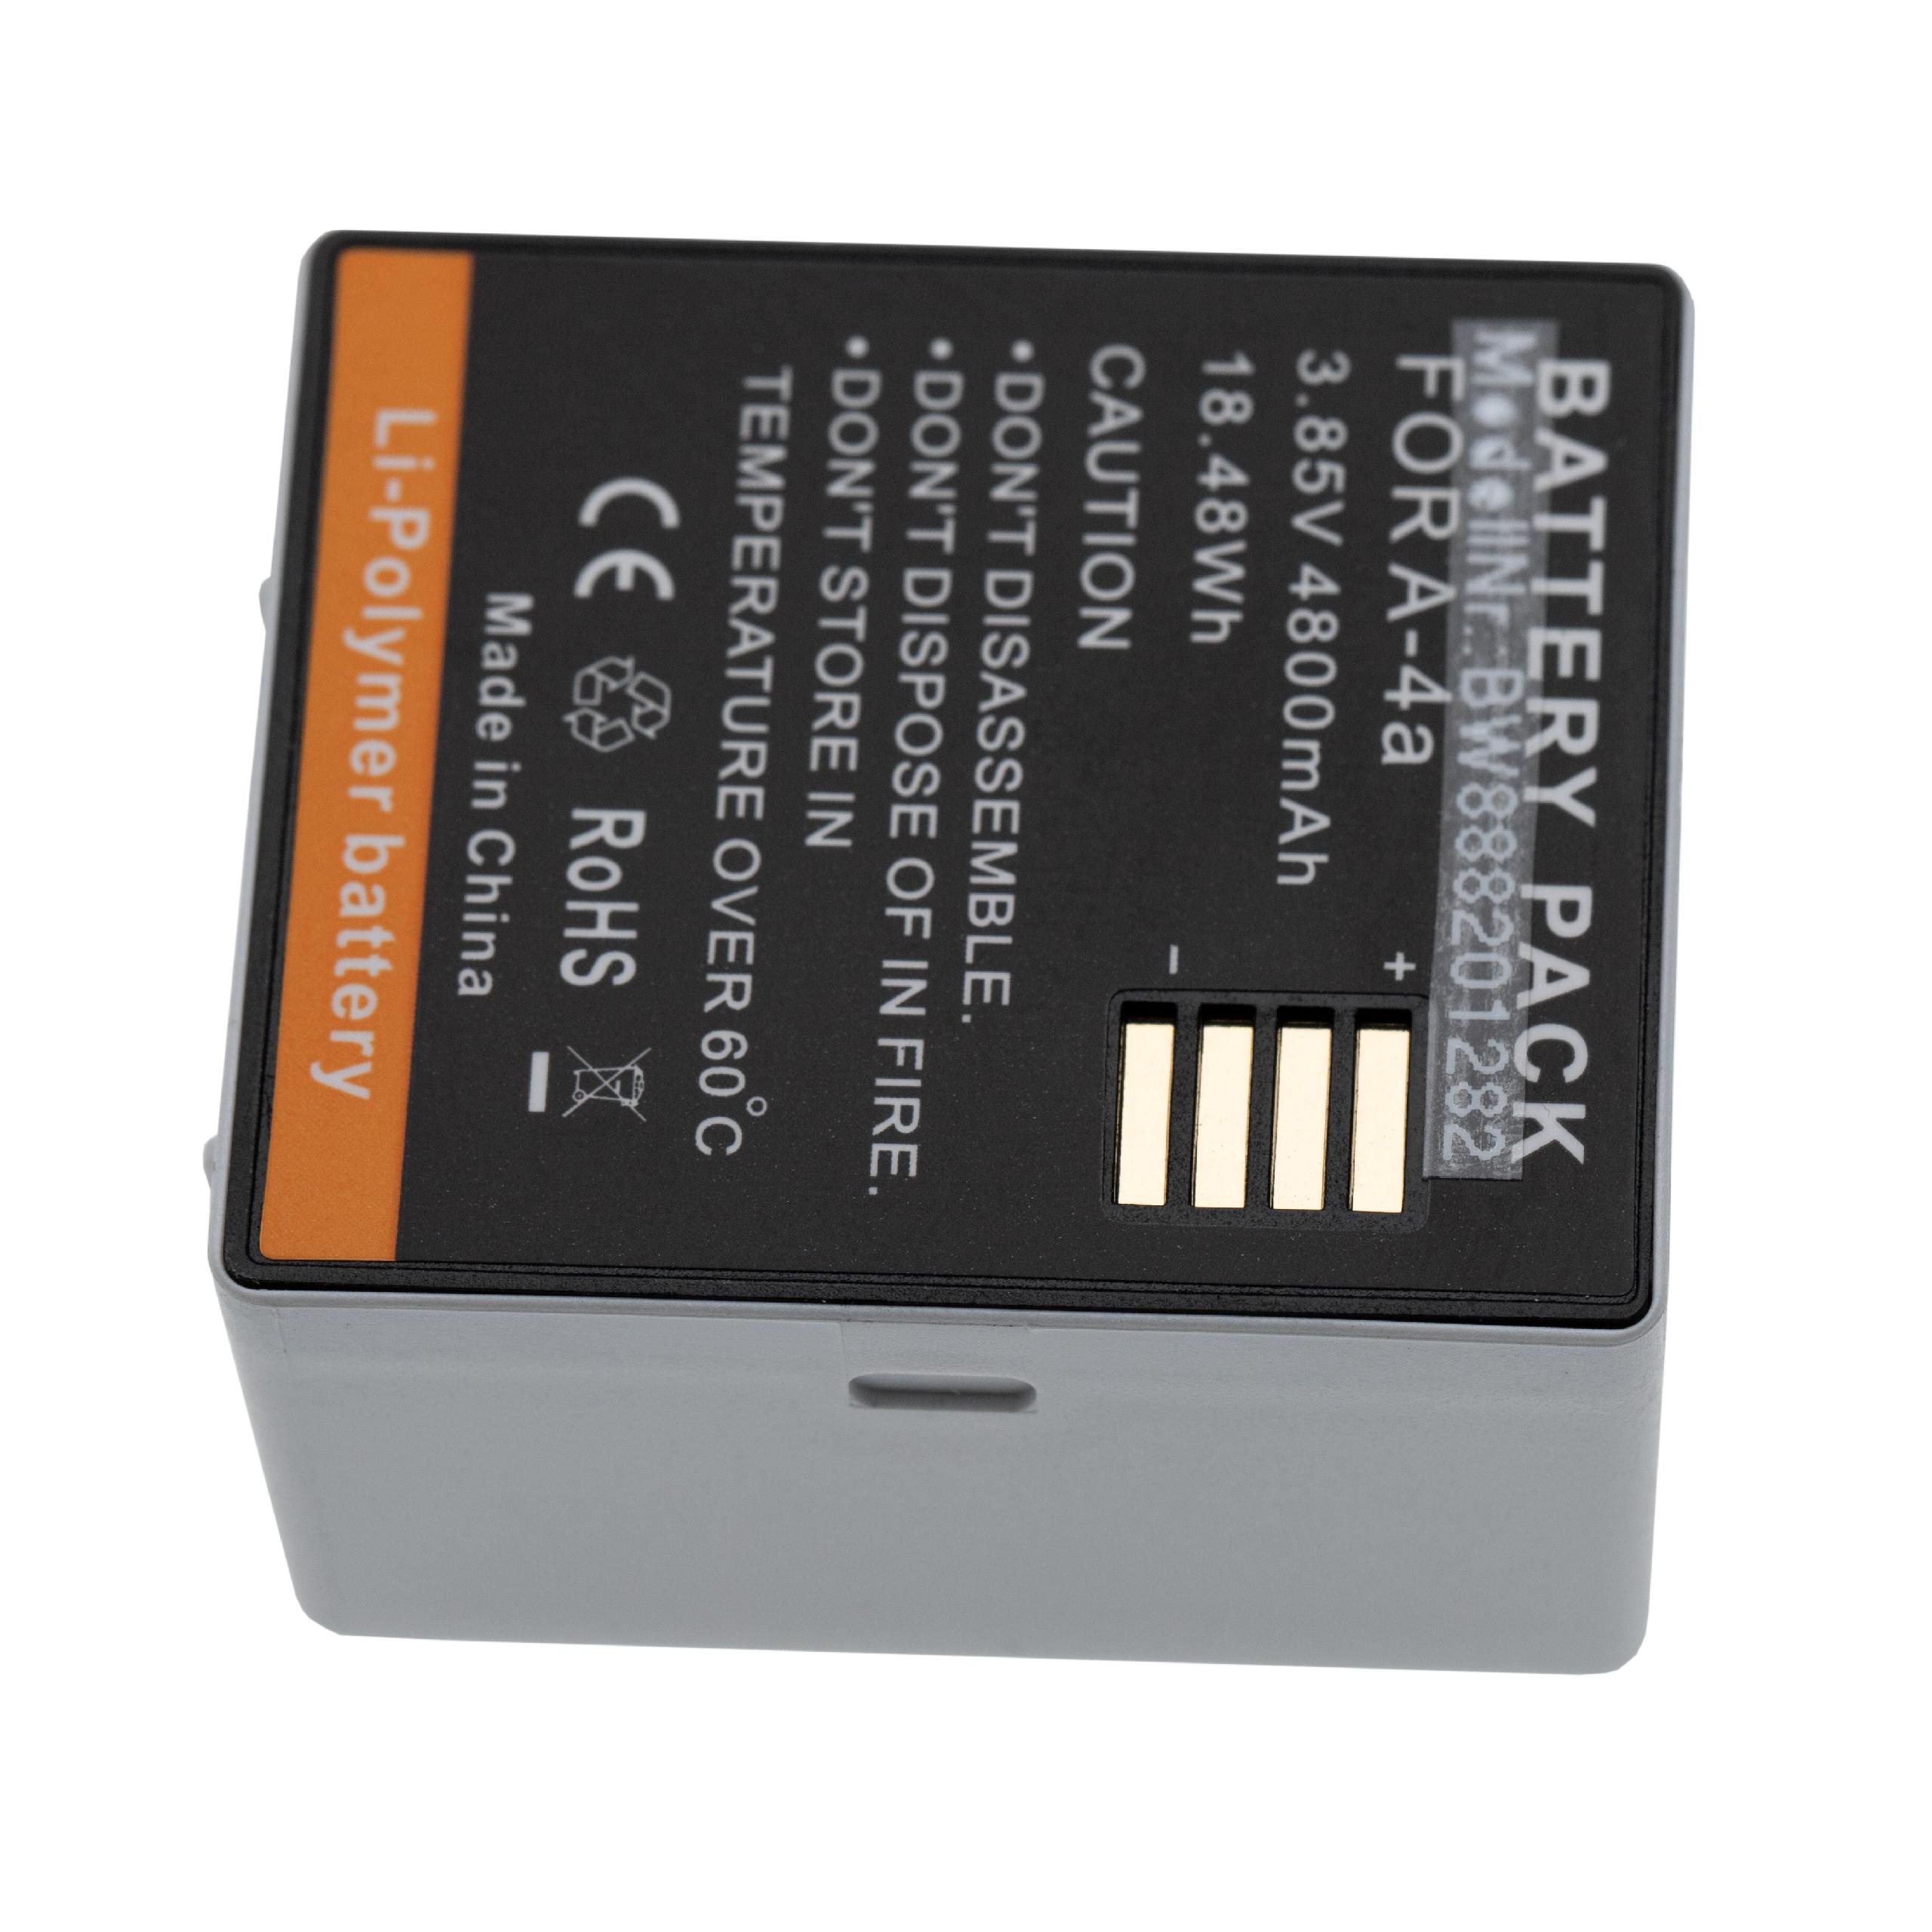 Batterie remplace Arlo 308-1070-01, 308-10069-01 pour caméra de surveillance - 4800mAh 3,85V Li-polymère